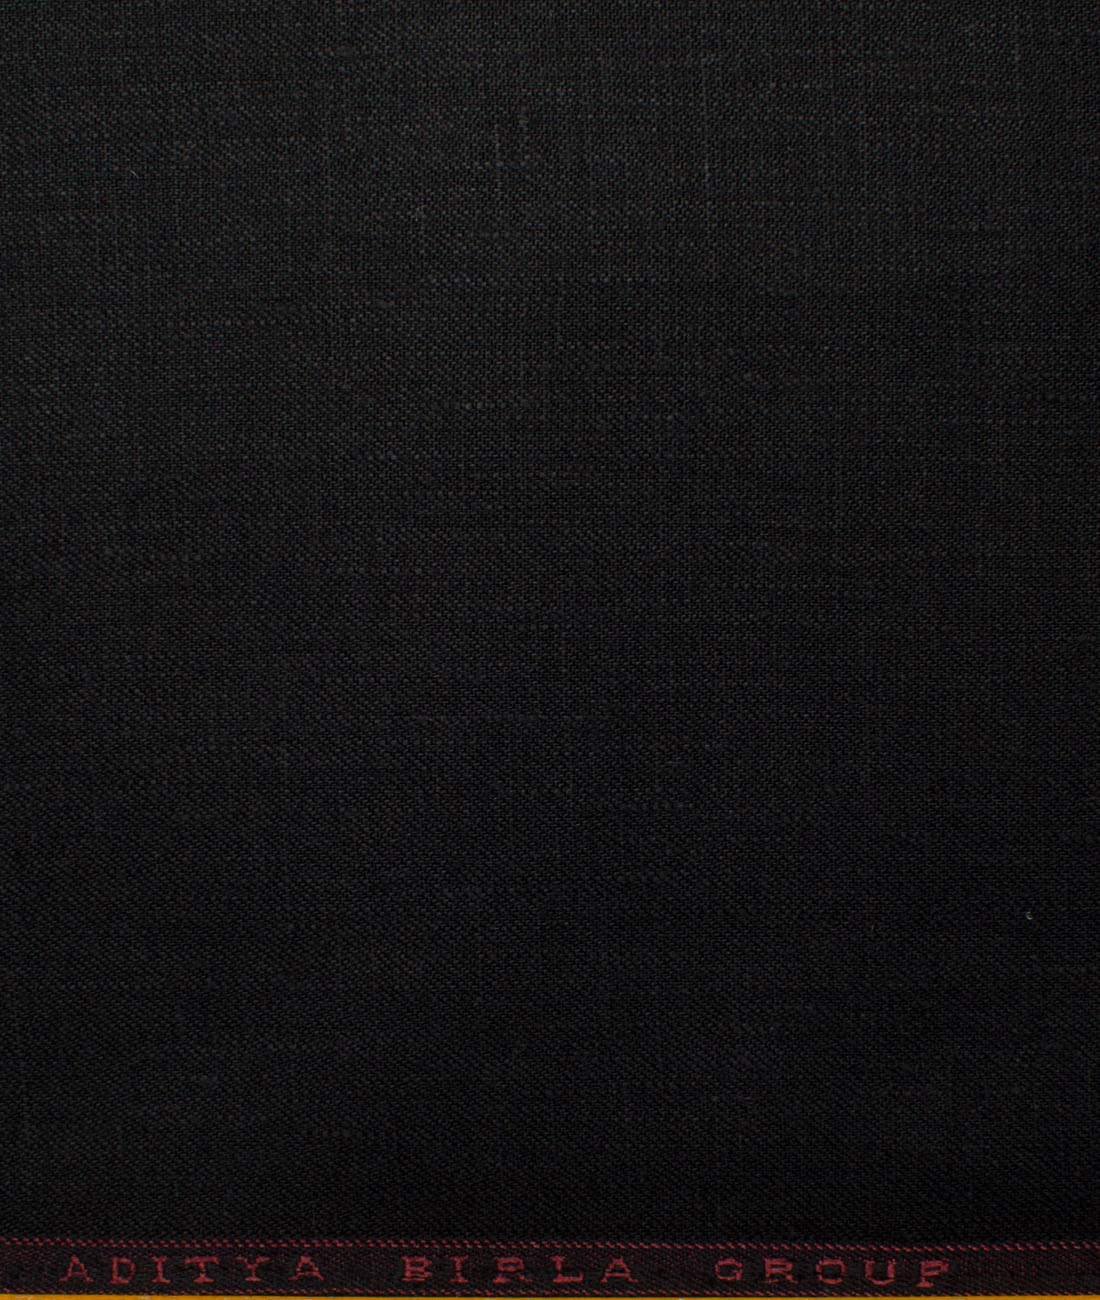 Linen Club Men's Linen Solids Unstitched Suiting Fabric (Black)